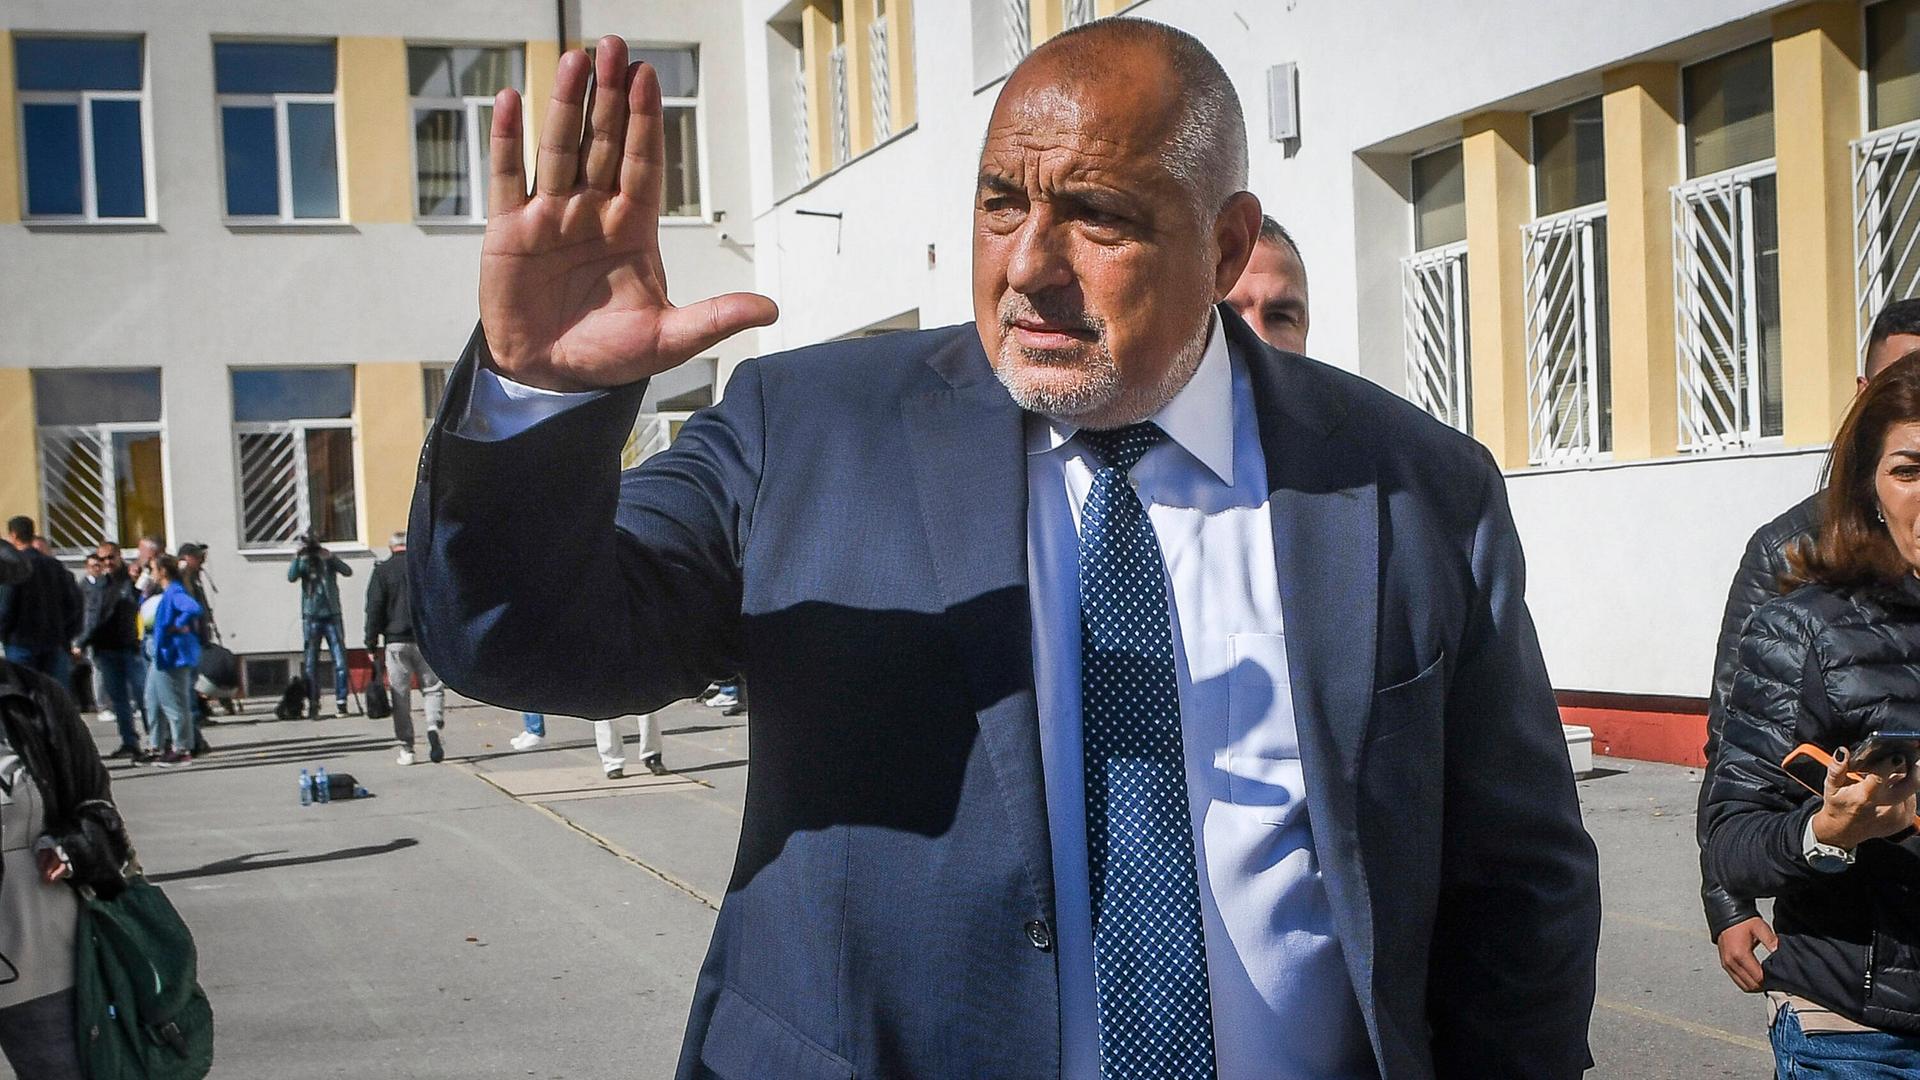 Bojko Borrisov winkt mit der rechten Hand nach der Stimmabgabe bei den letzten Wahlen.